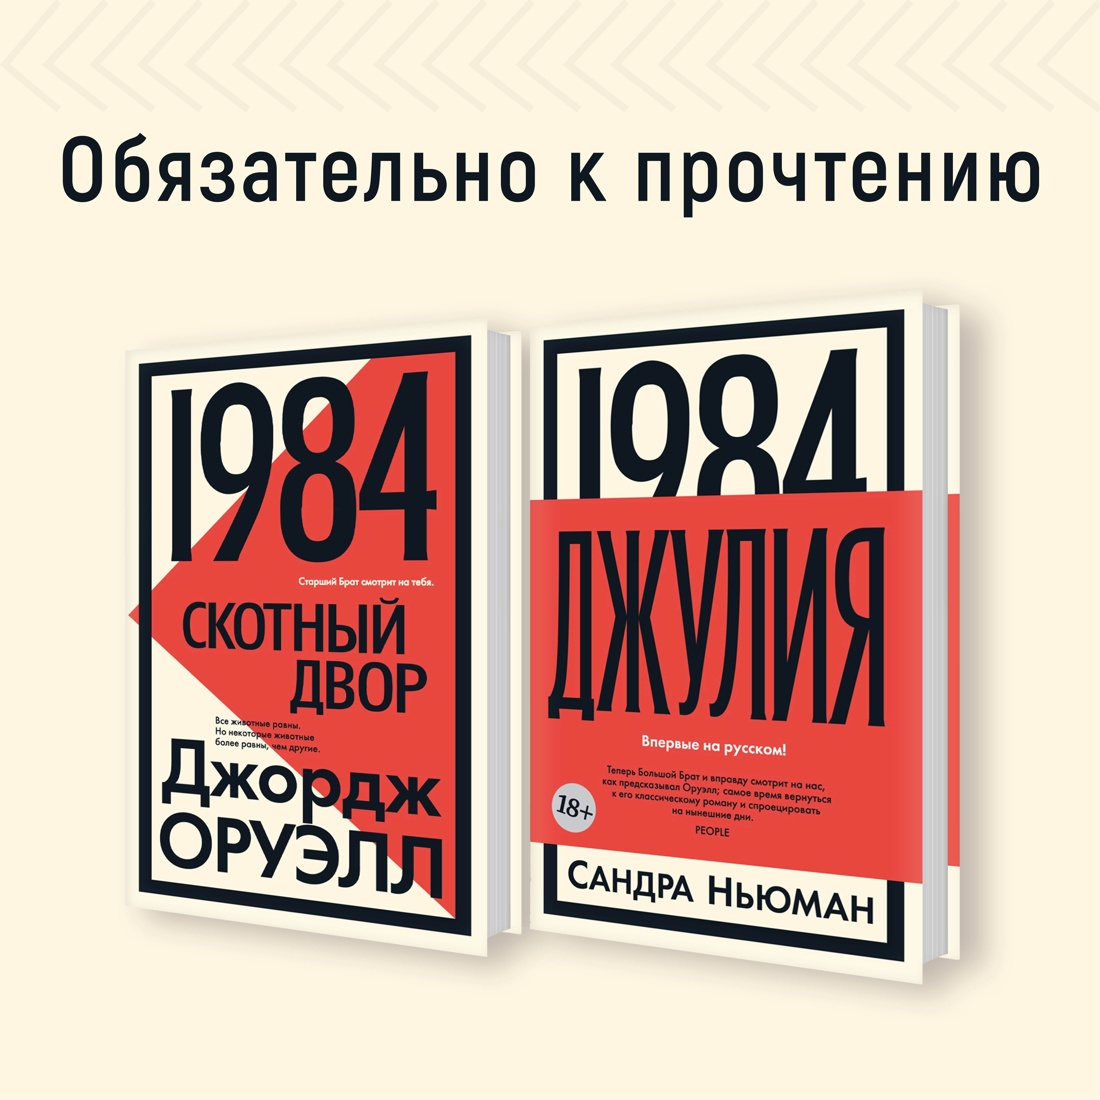 Промо материал к книге "1984. Джулия" №6